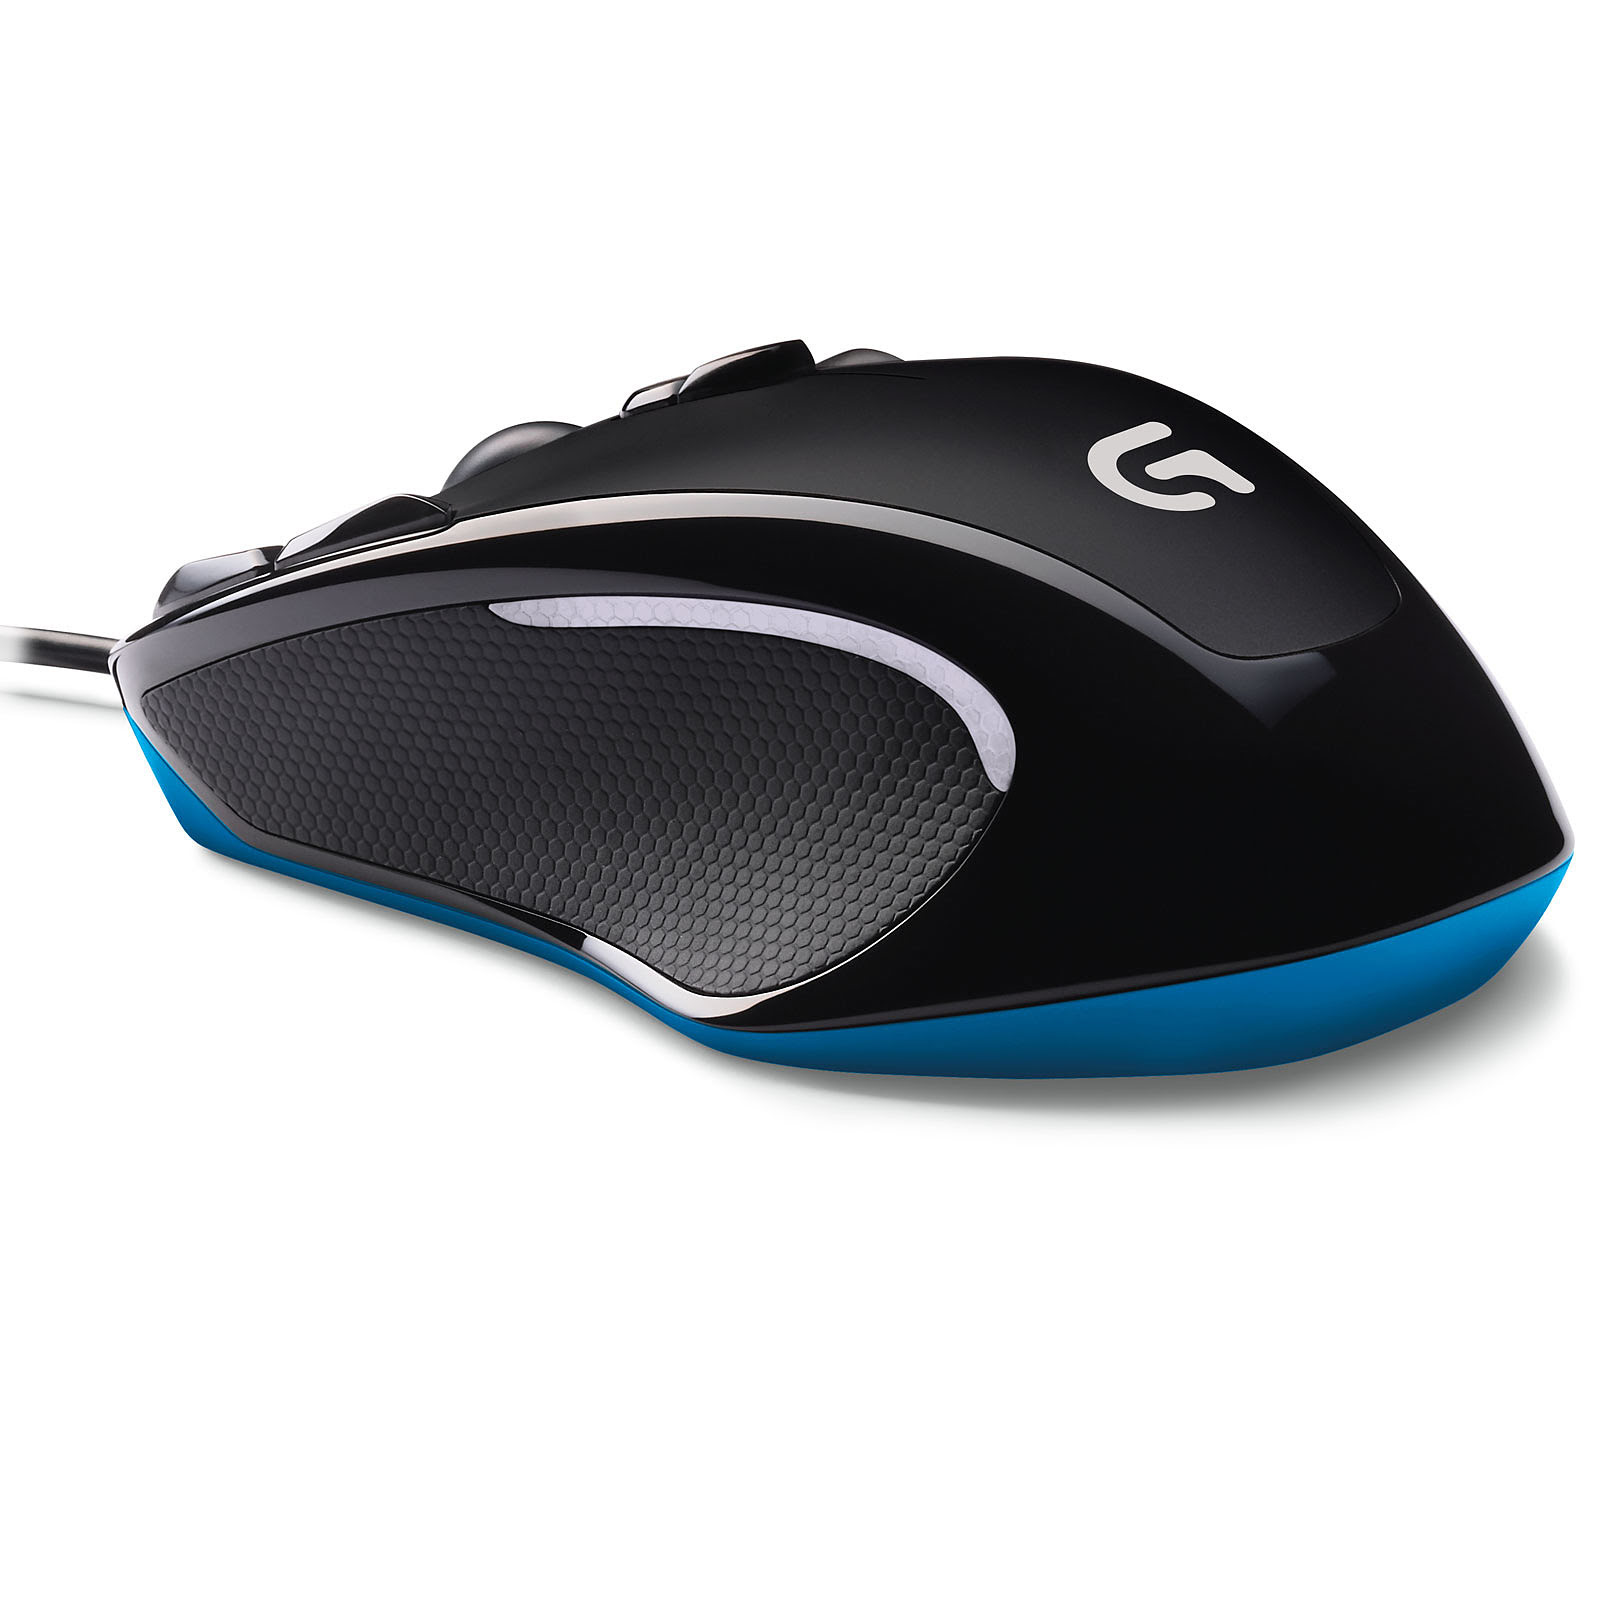  G300s Gaming Mouse (910-004346 --) - Achat / Vente Souris PC sur Picata.fr - 2